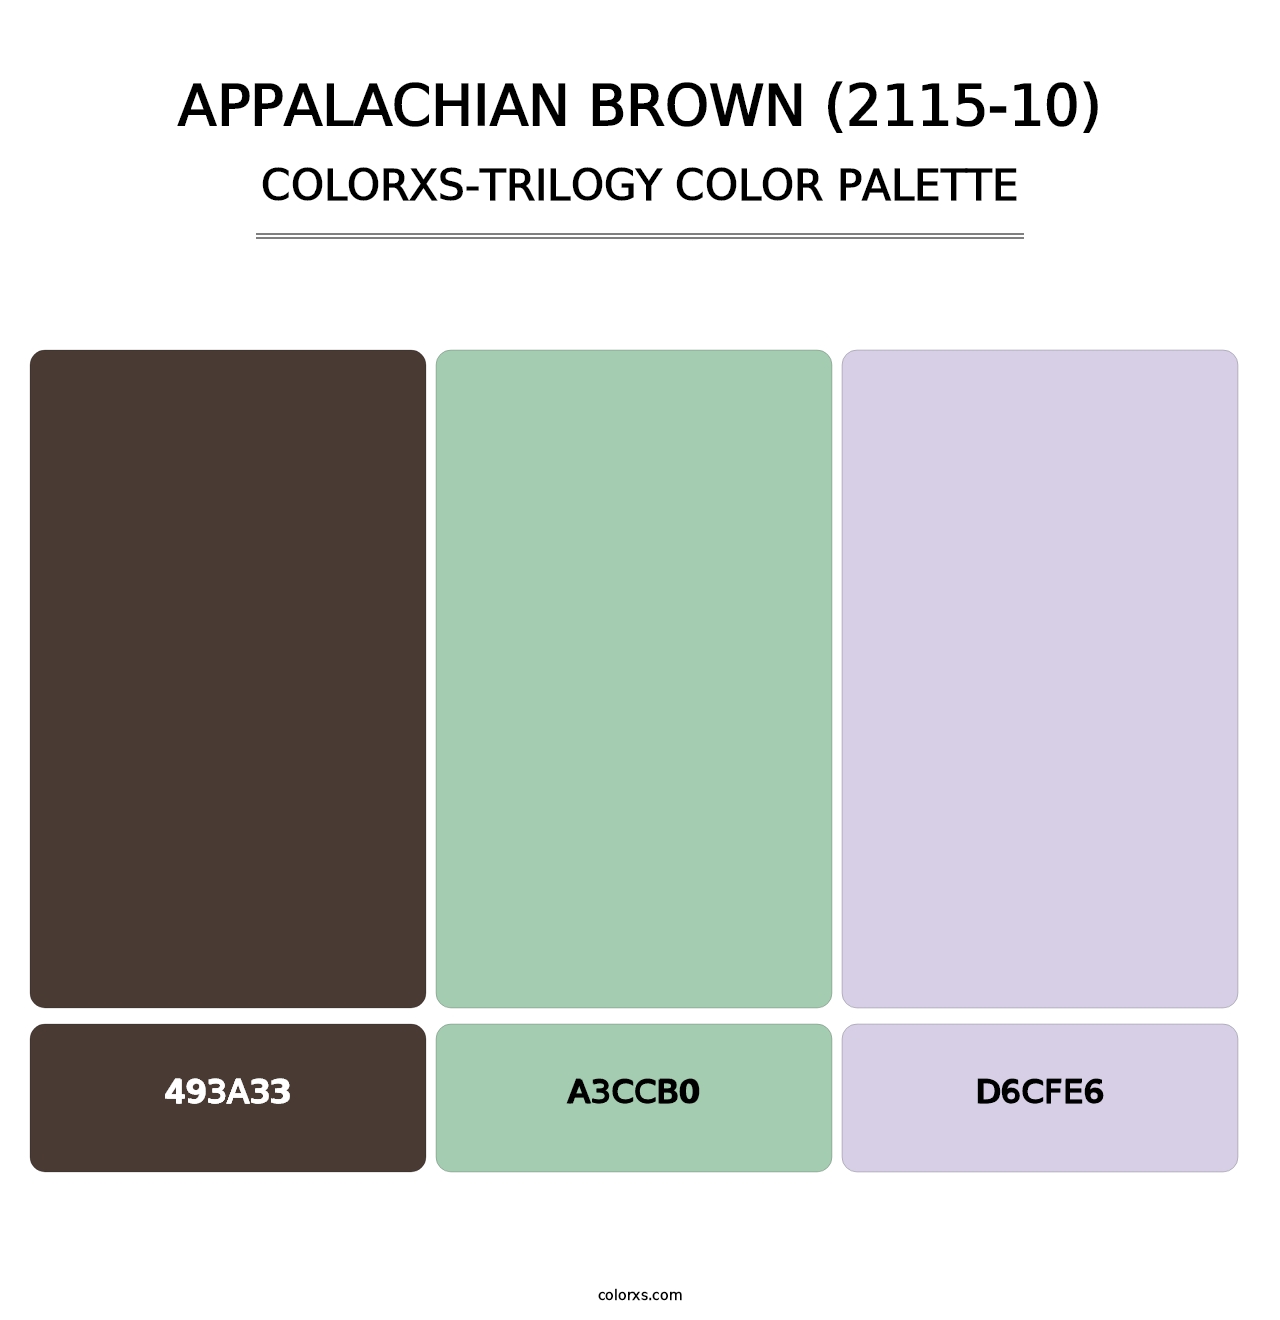 Appalachian Brown (2115-10) - Colorxs Trilogy Palette